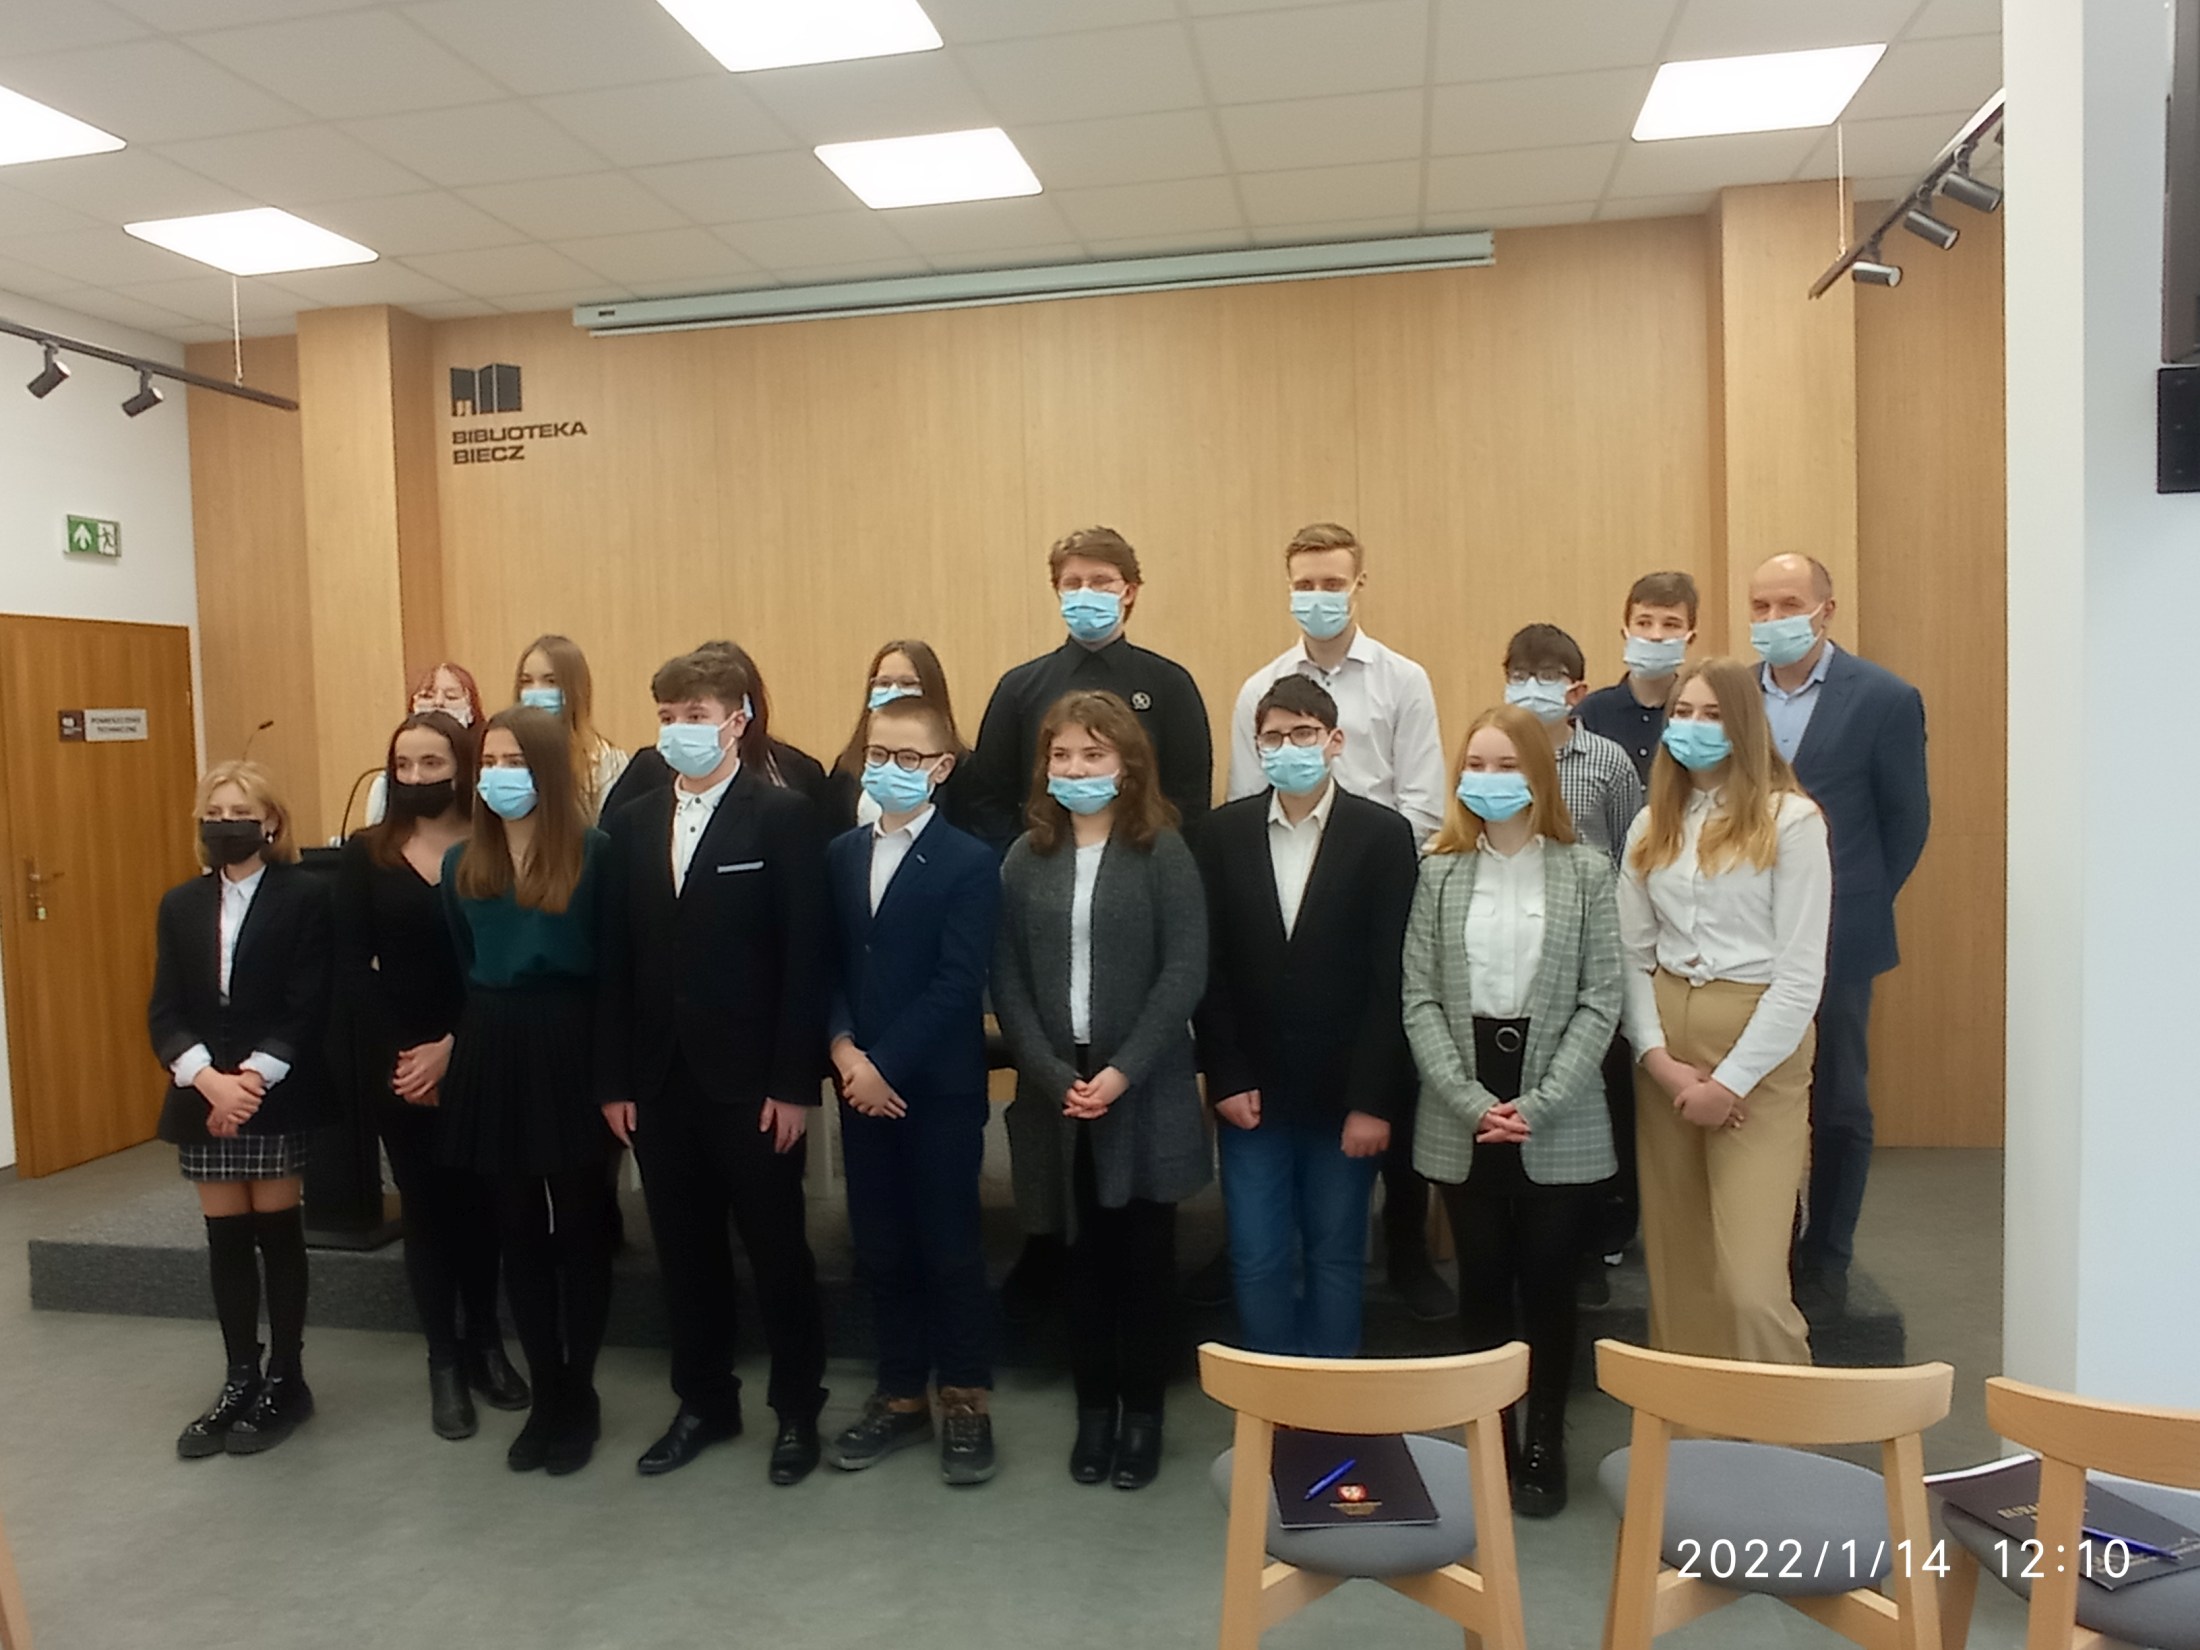 Na zdjęciu stoi grupa uczniów, są to przedstawiciele szkół podstawowych i ponadpodstawowych z gminy Biecz wraz z opiekunem Młodzieżowej Rady Miejskiej, panem Jerzym Mikosem. Członkowie MRM mają zakryte maseczką ochronną usta i nos.